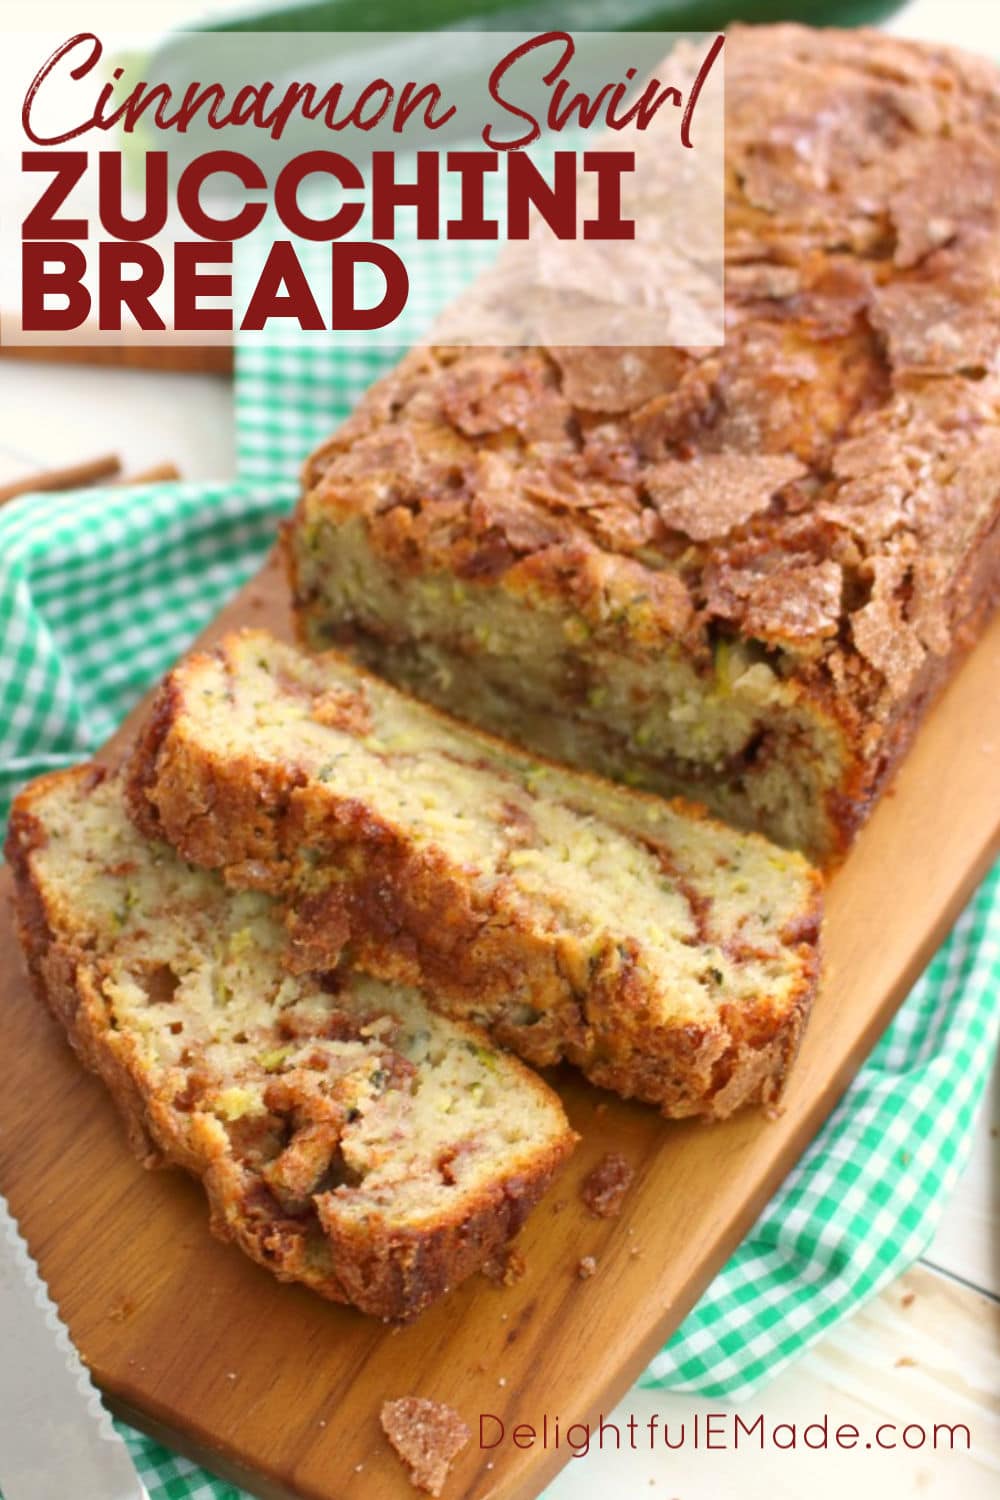 Cinnamon Swirl Zucchini Bread - The BEST Zucchini Bread recipes!